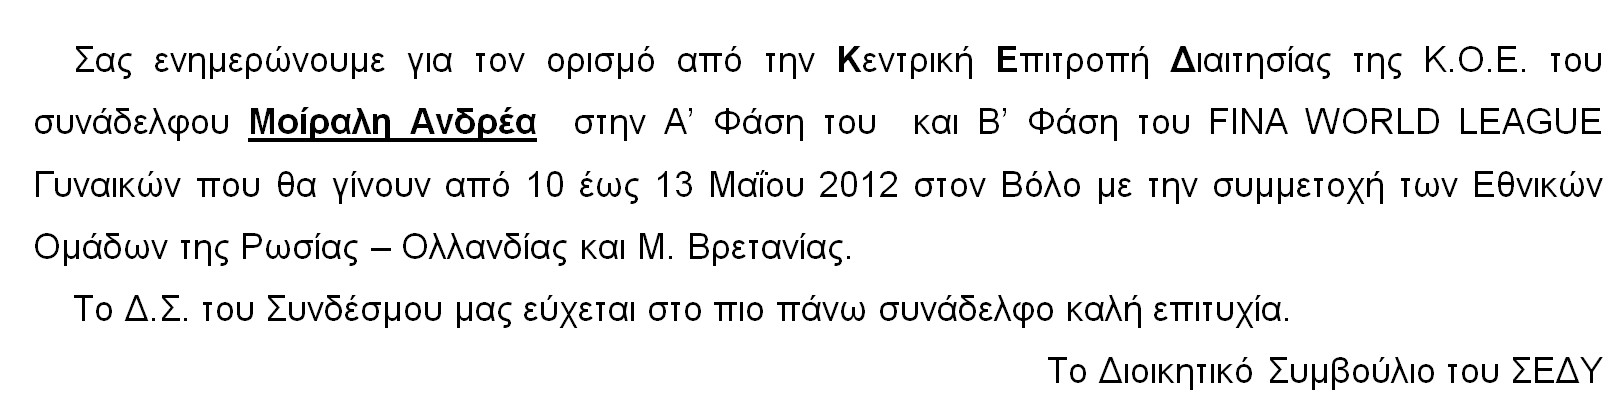 ENHMEROTIKO_11.5.2012_2